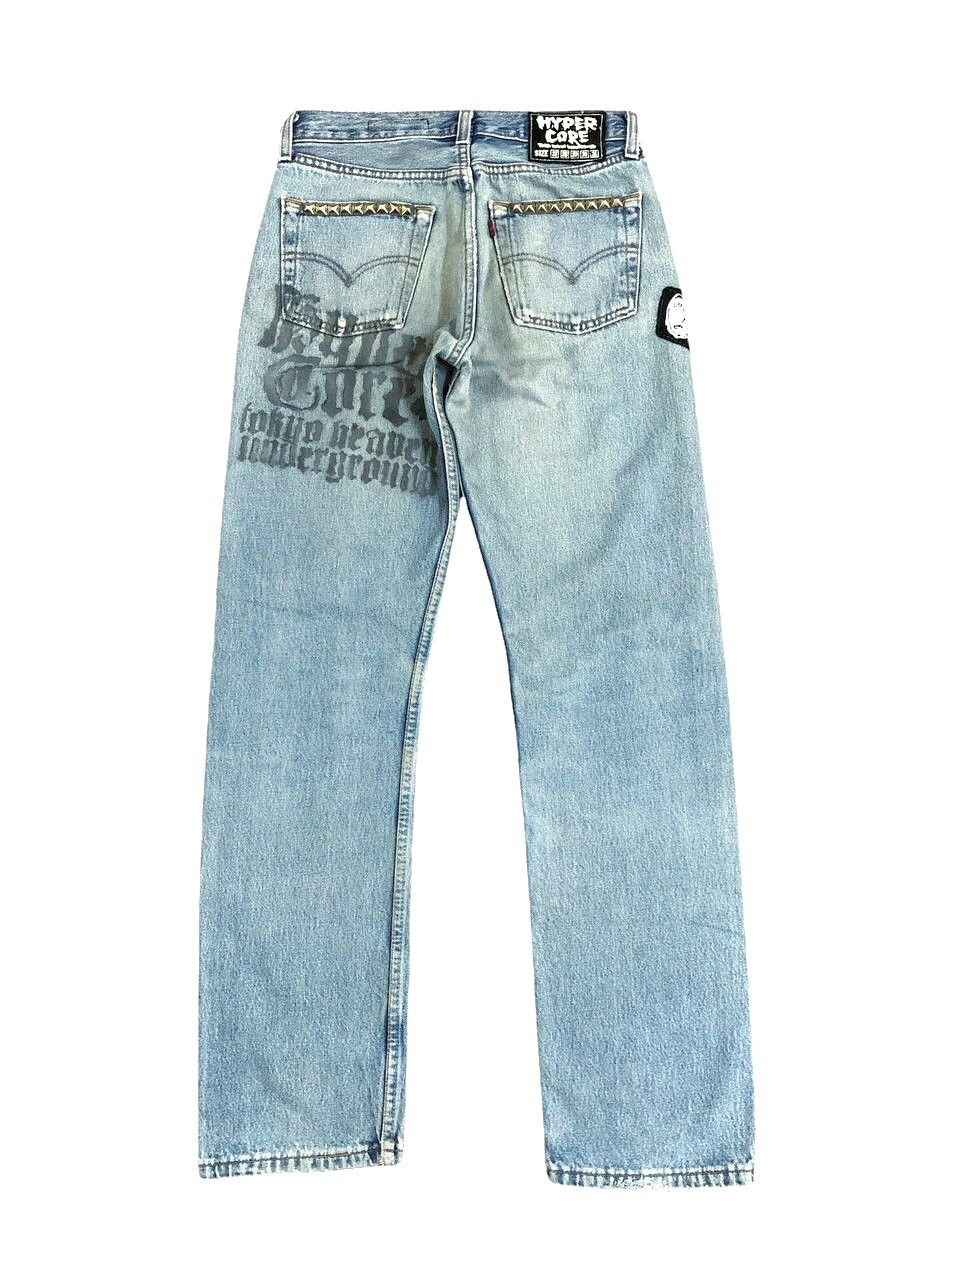 Vintage Vintage Levis Distressed Custom Patch Punk Jeans Size US 27 - 2 Preview